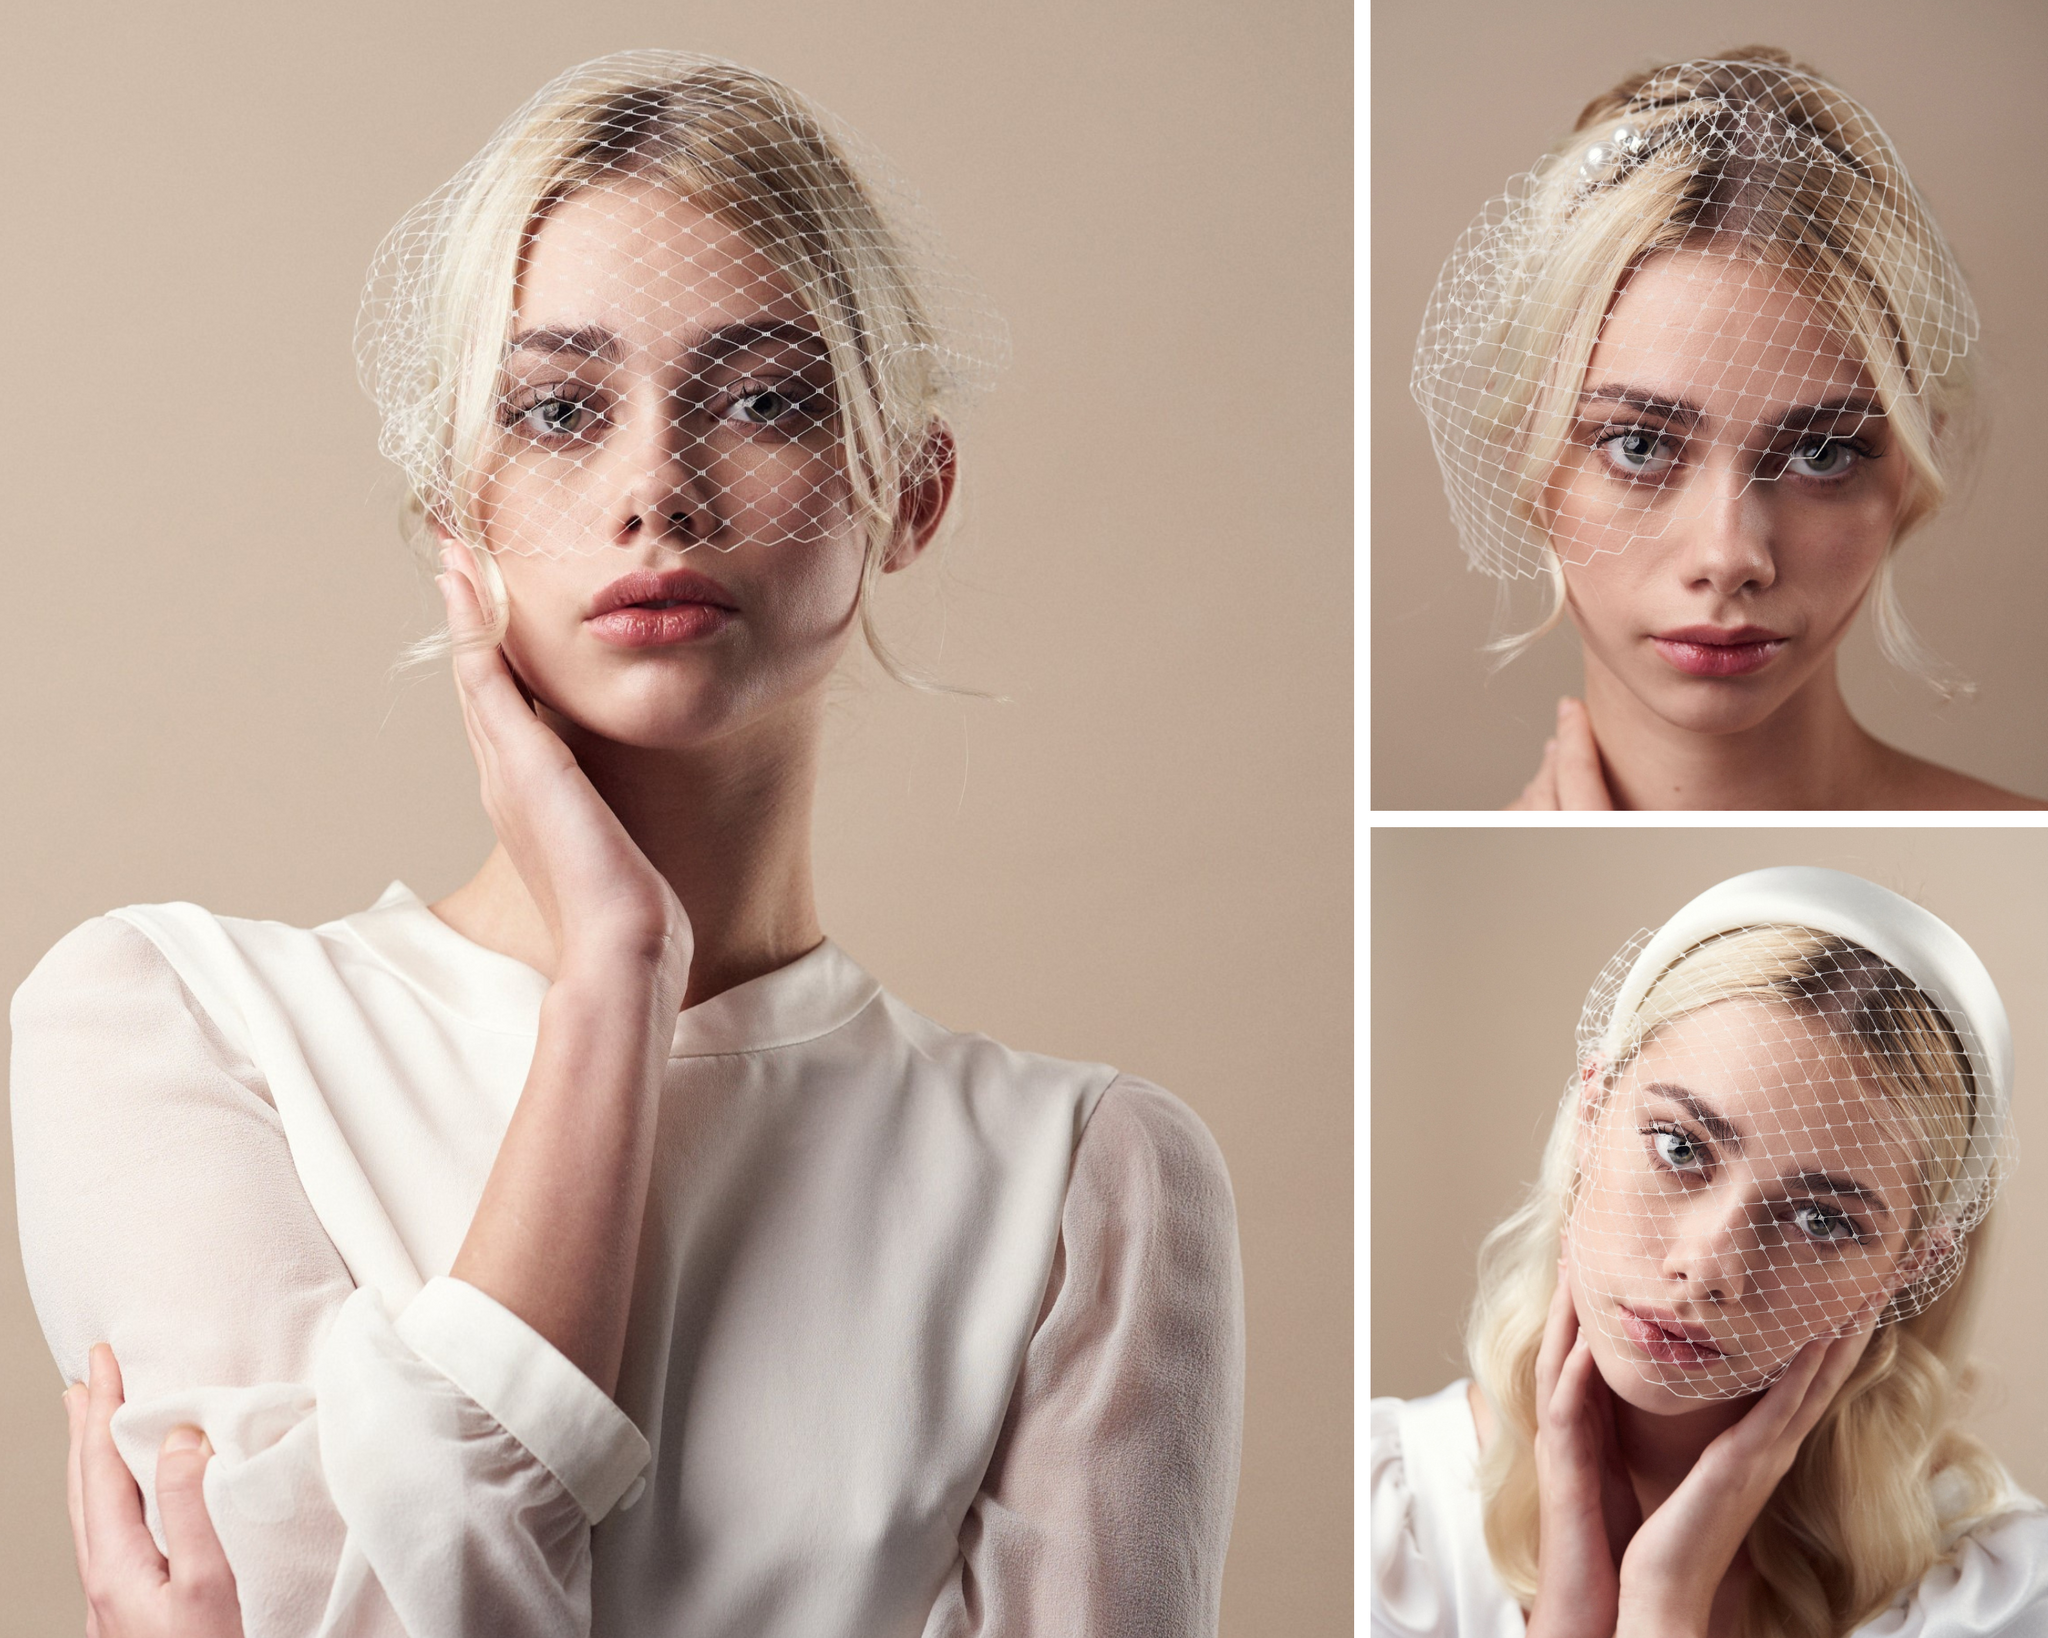 Models dressed as brides wear birdcage veils 